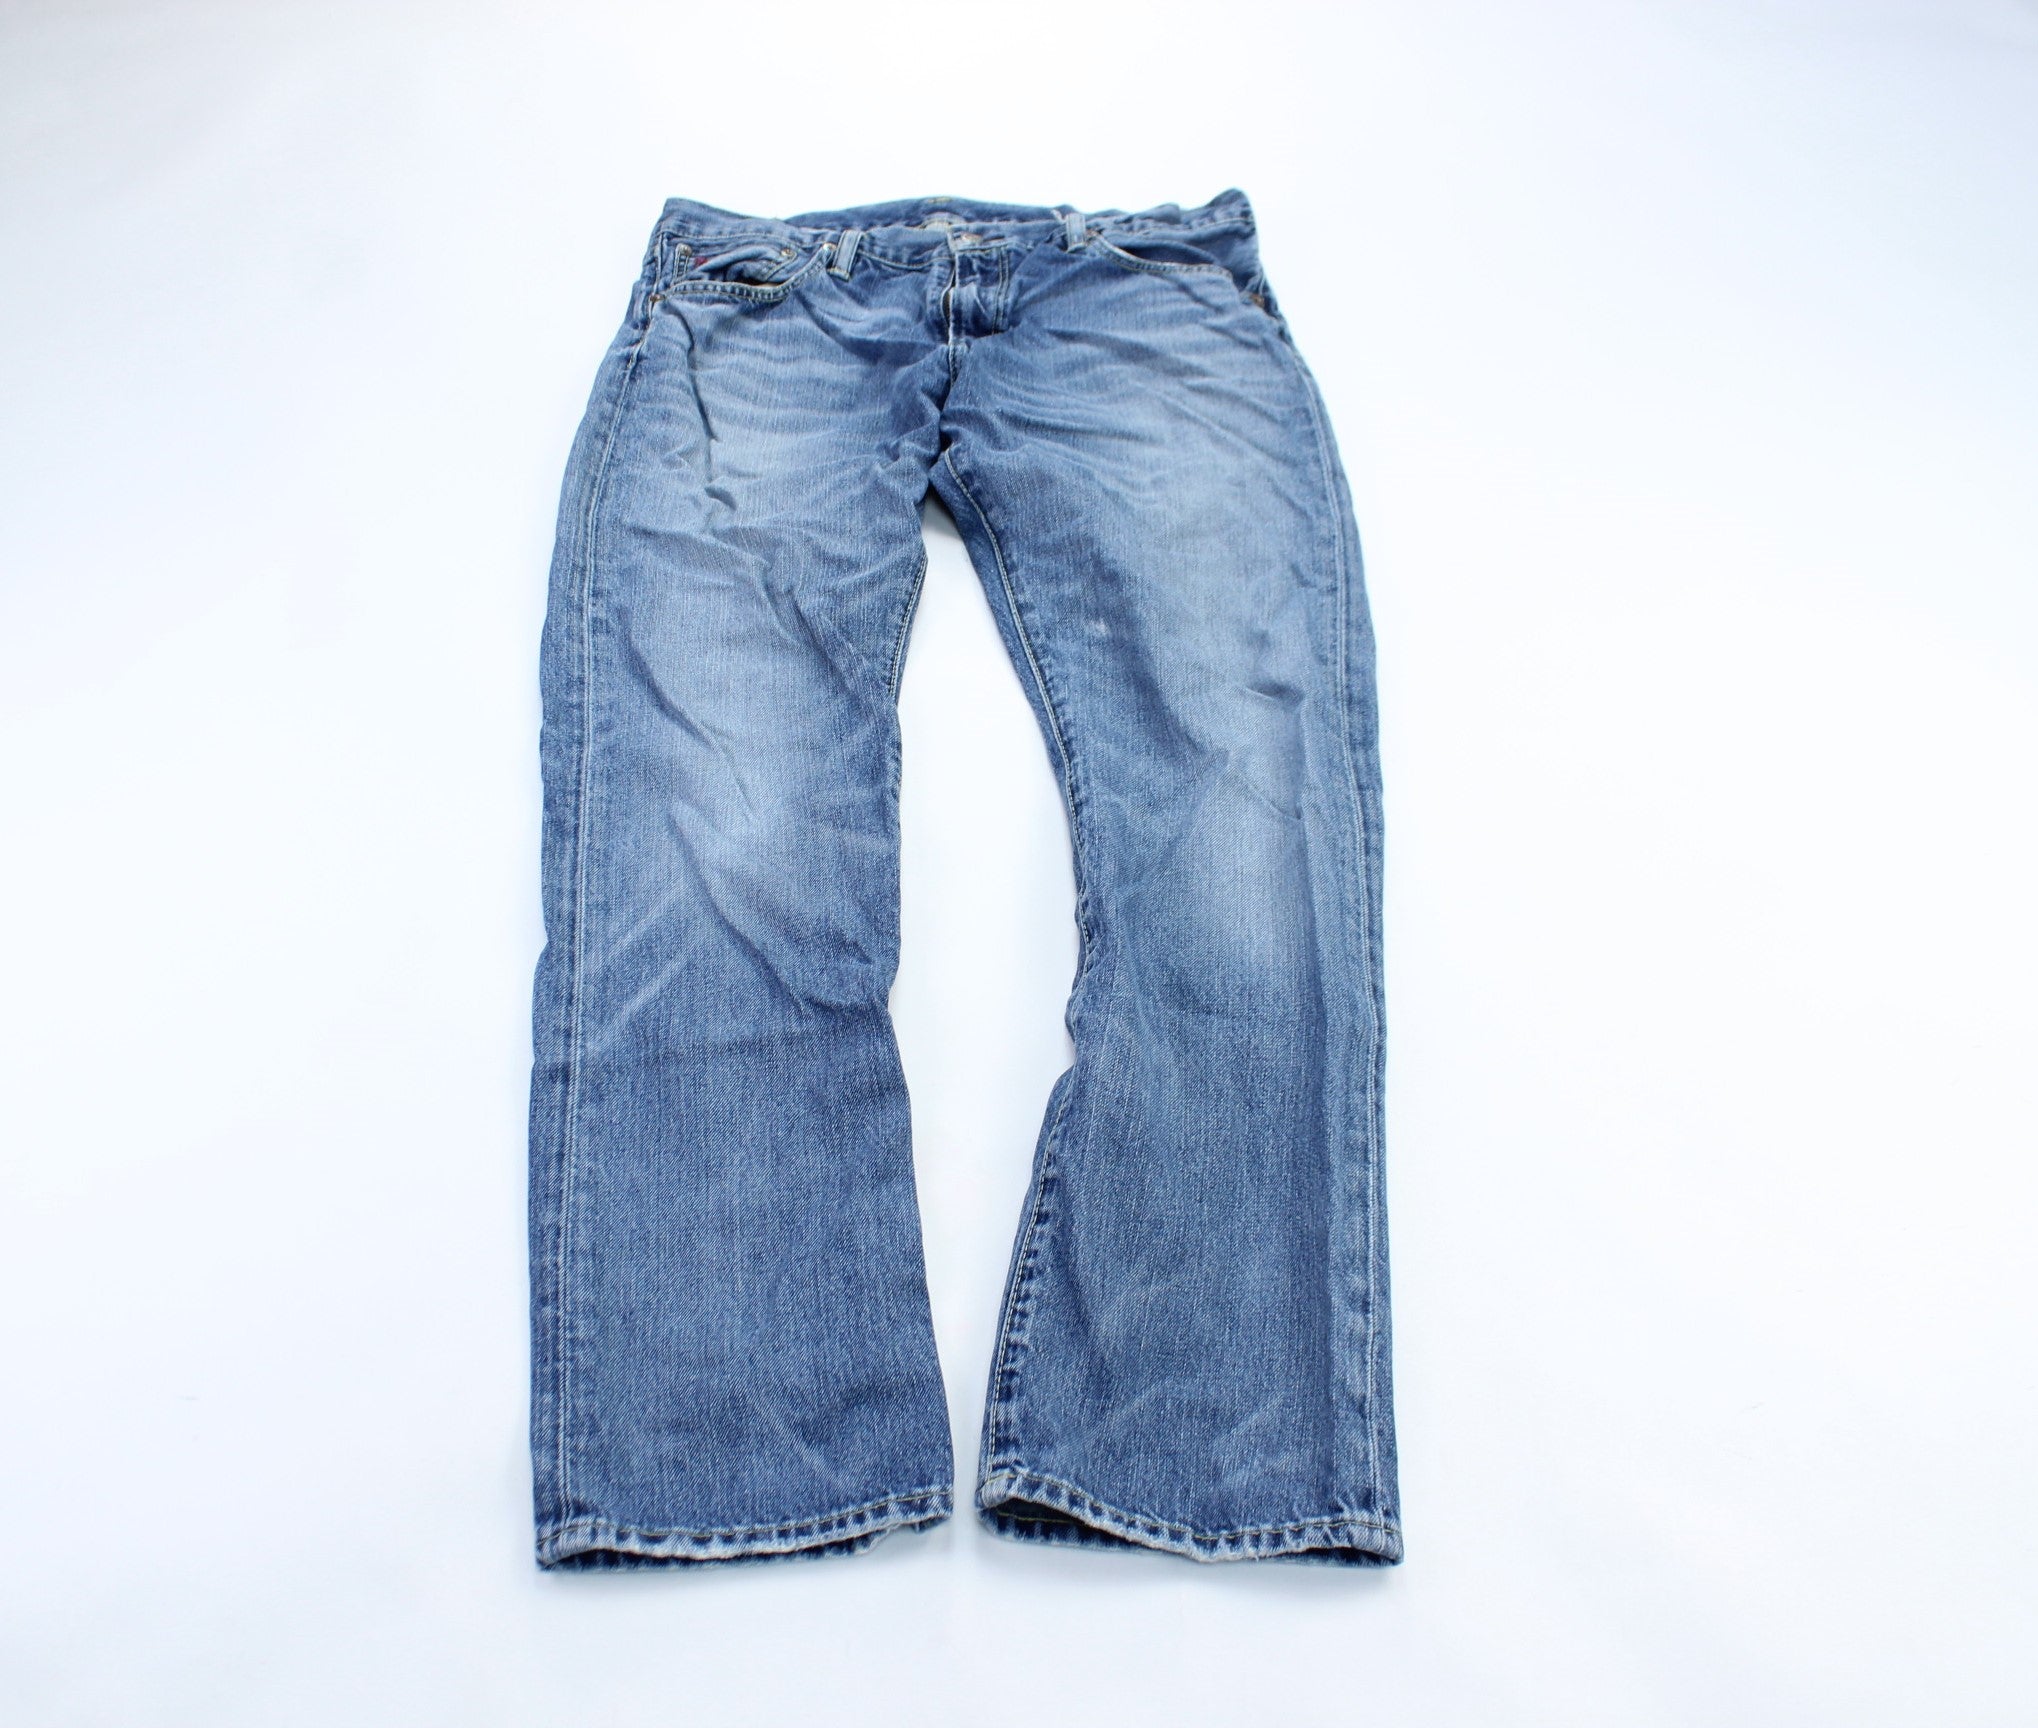 Polo Ralph Lauren Medium Wash Denim Jeans - ThriftedThreads.com